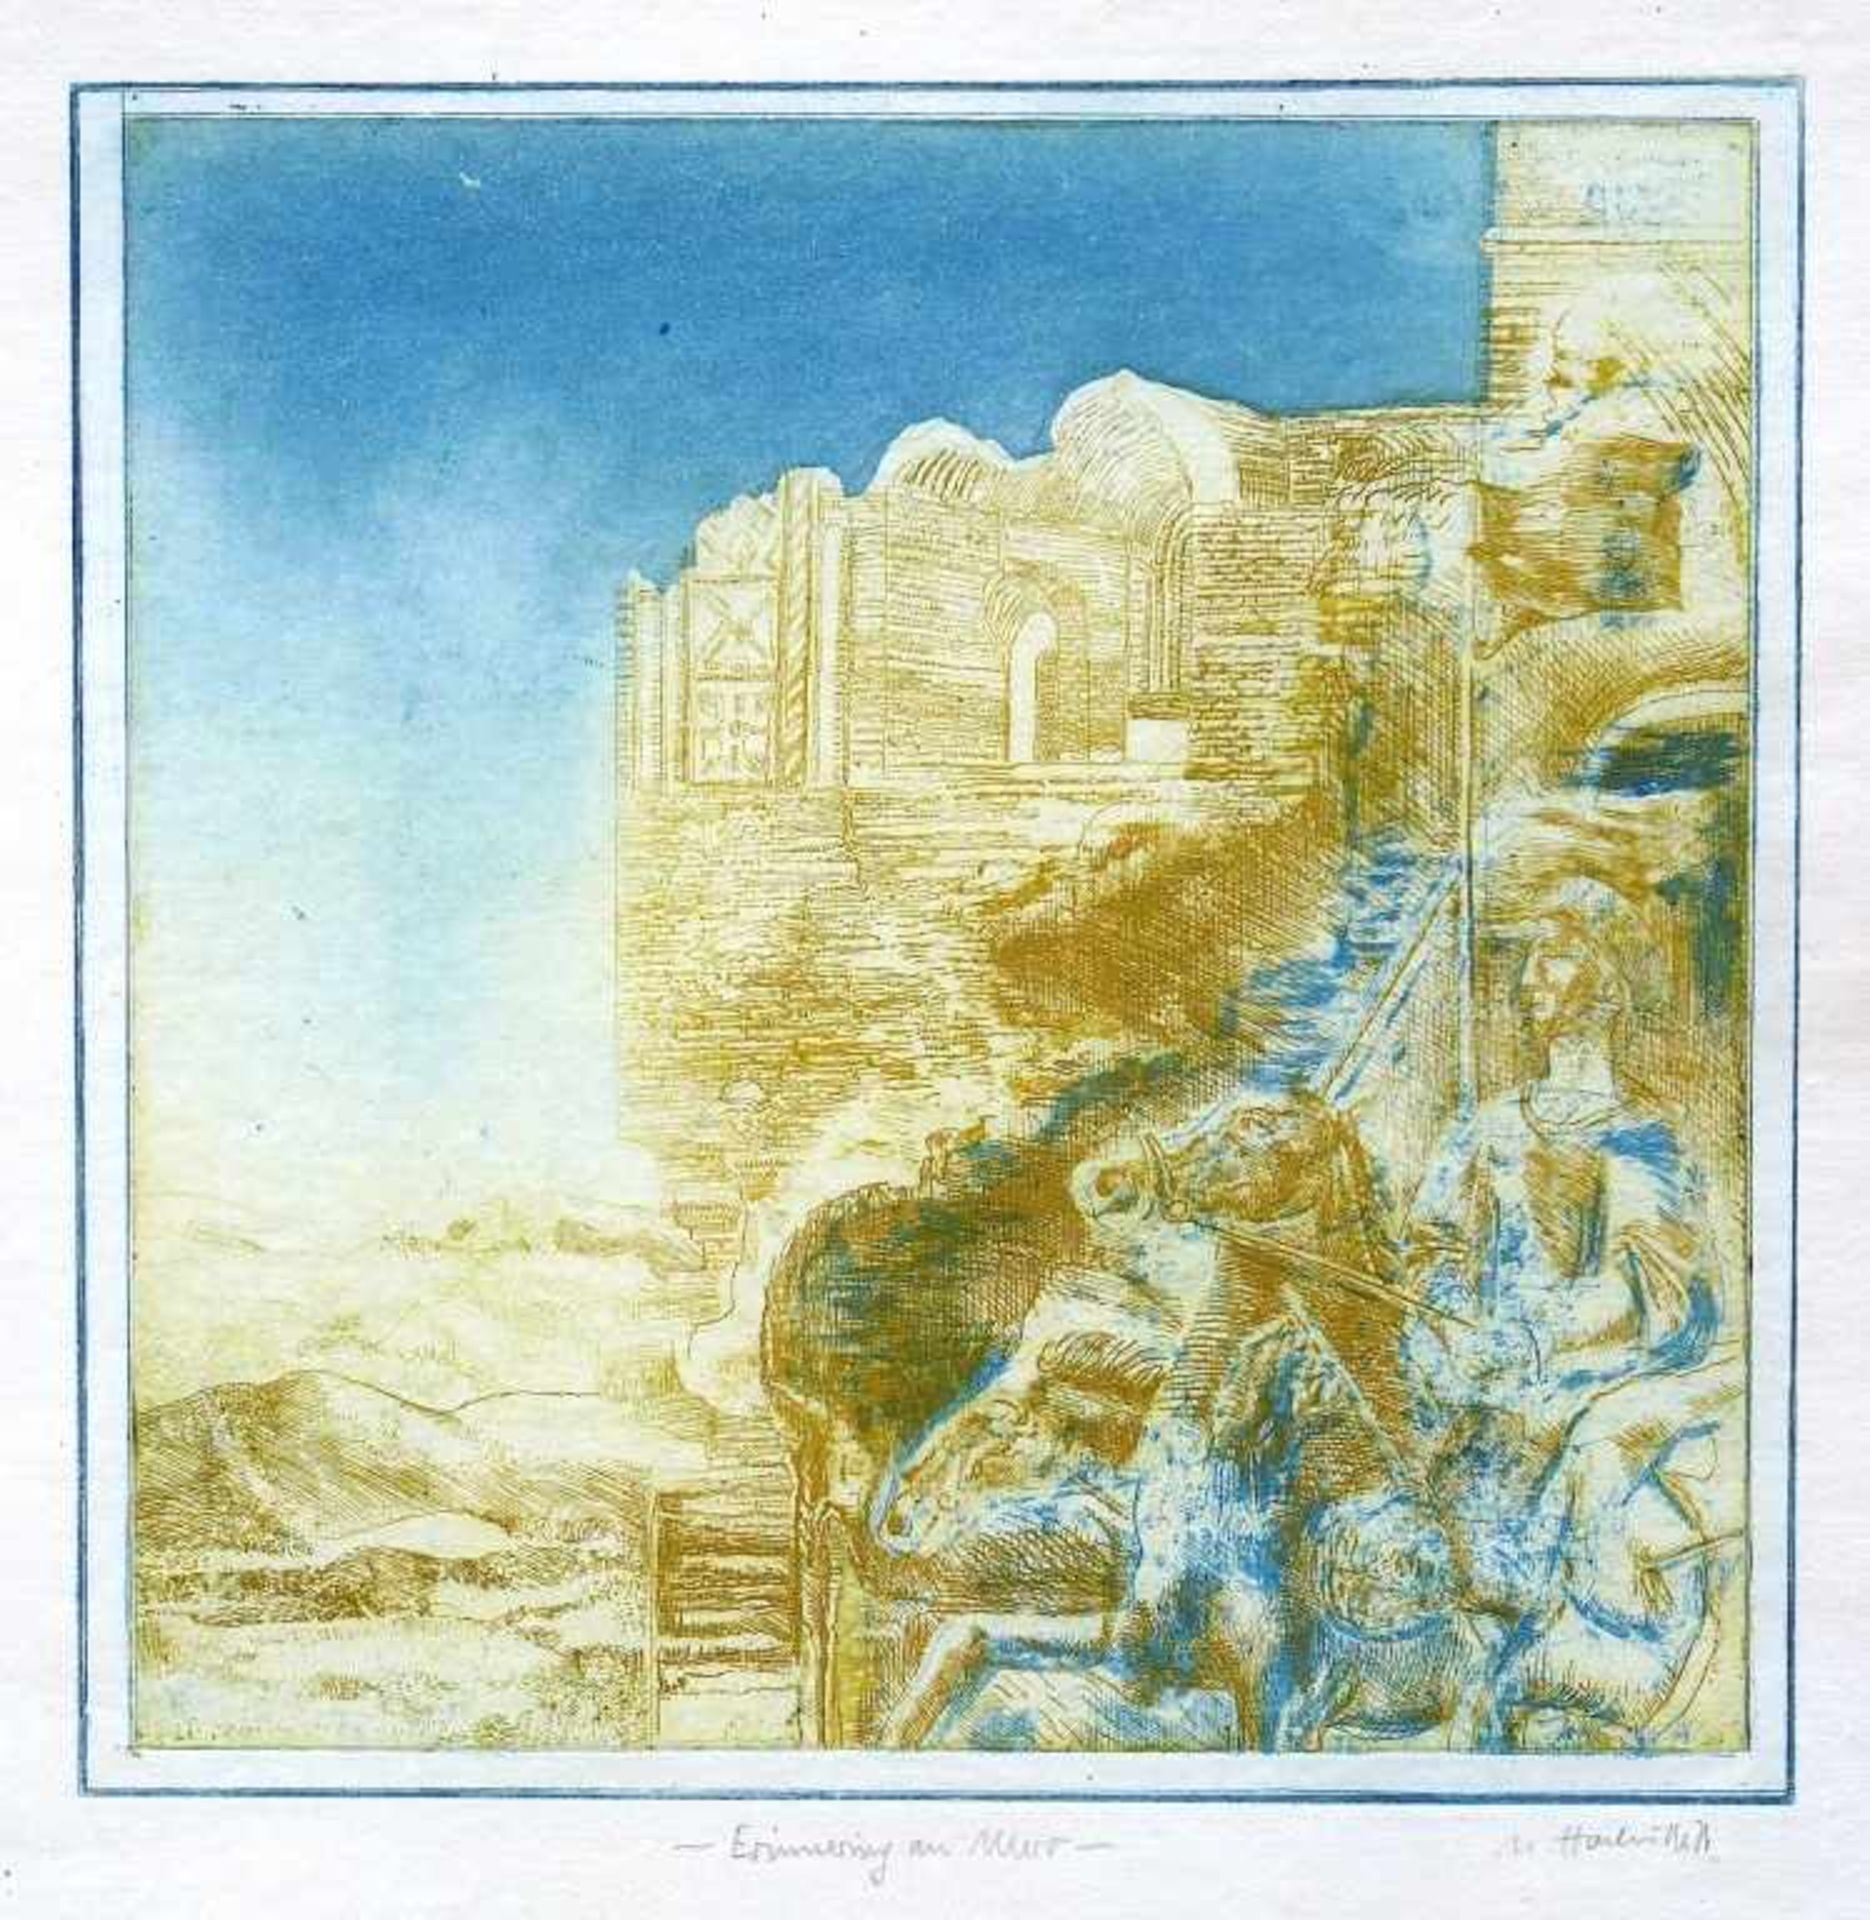 HACHULLA, ULRICH: "Erinnerung an Murr", 1976Farbradierung auf Japan23,8 x 24,1 (56,5 x 42,0 cm)